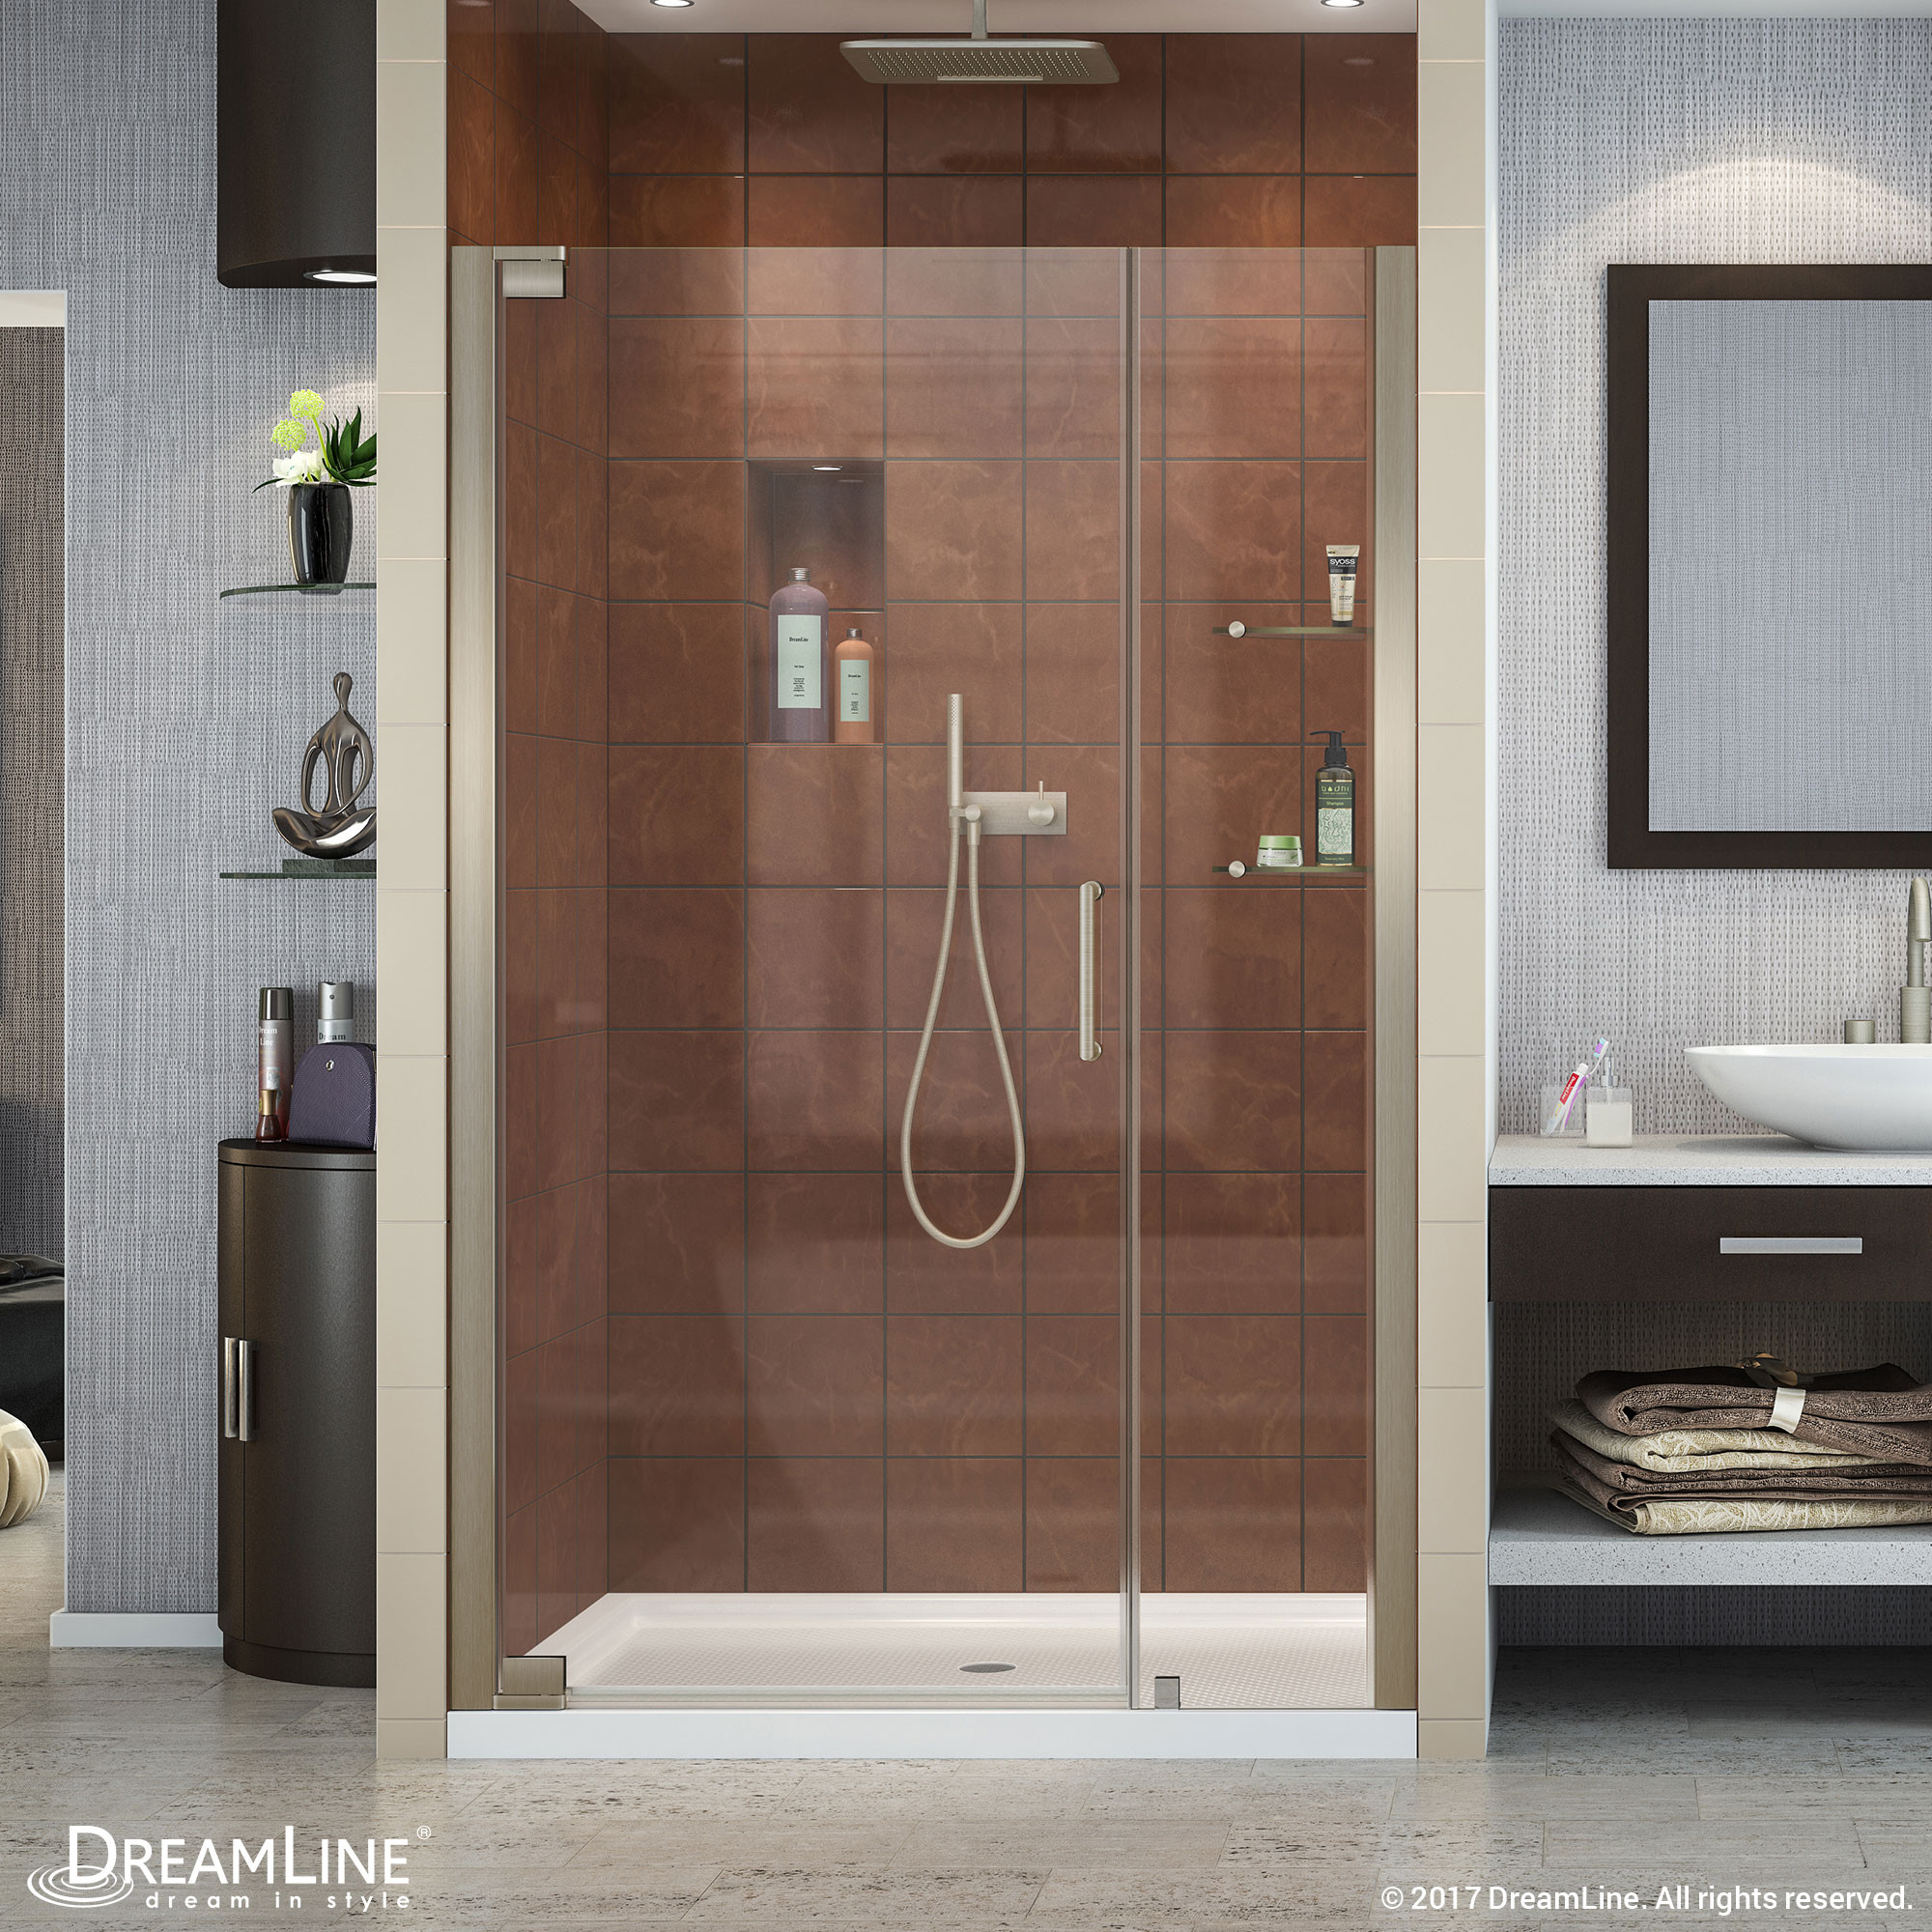 Dreamline SHDR-4139720-04 Brushed Nickel Elegance 39 to 41" Clear Shower Door